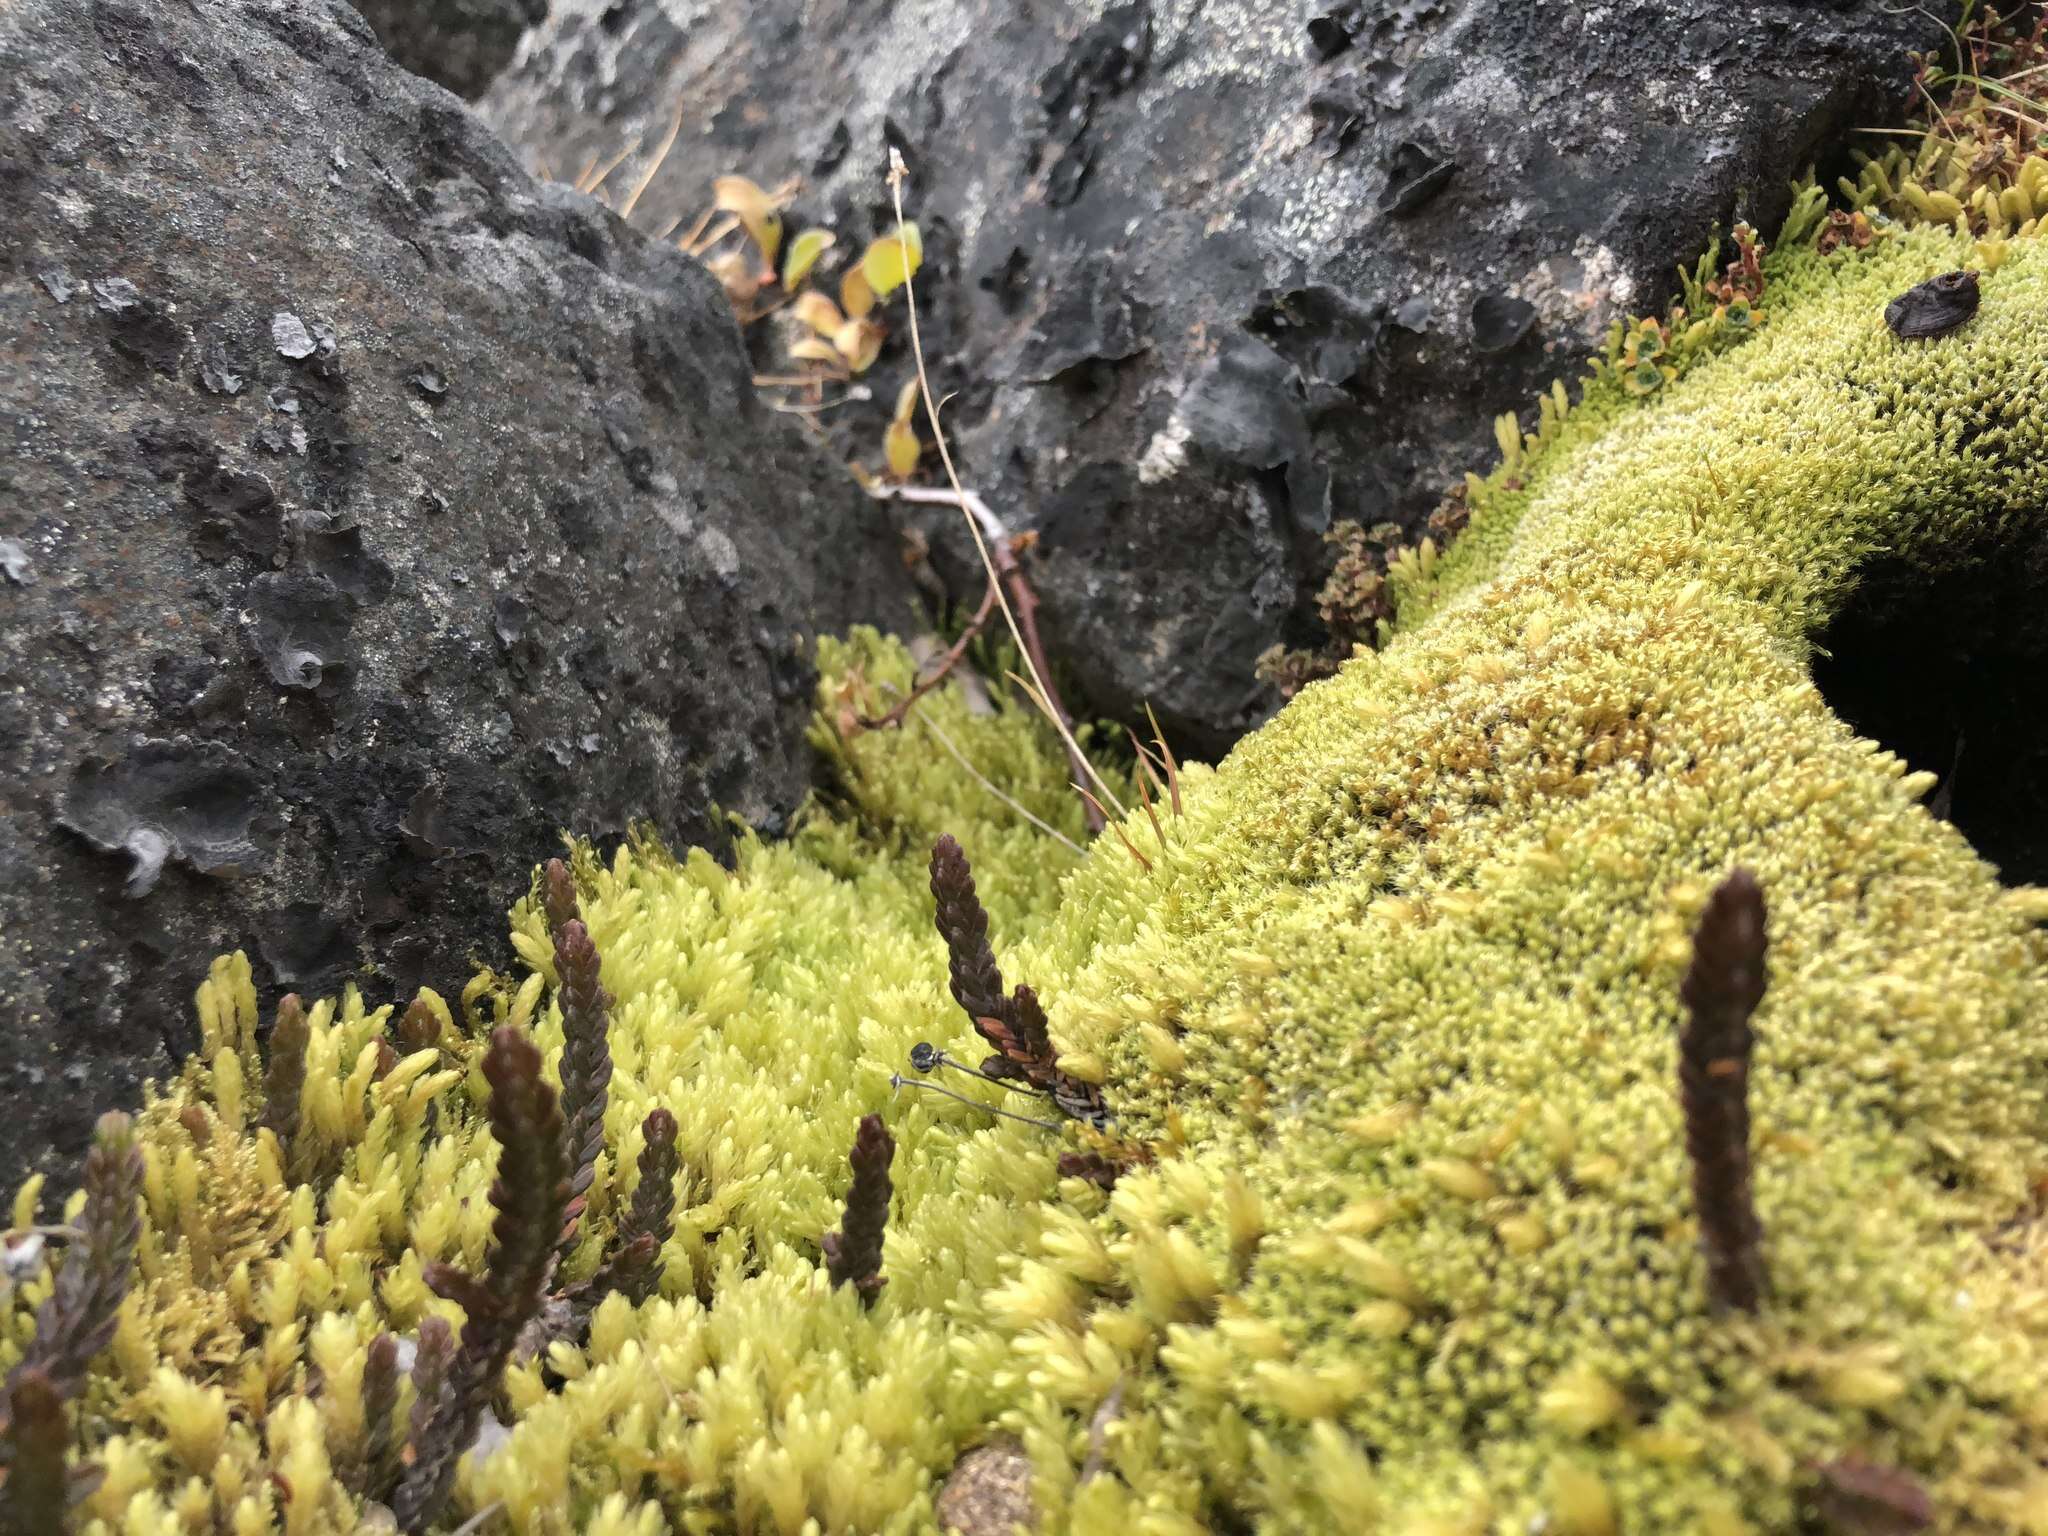 Image of turgid aulacomnium moss